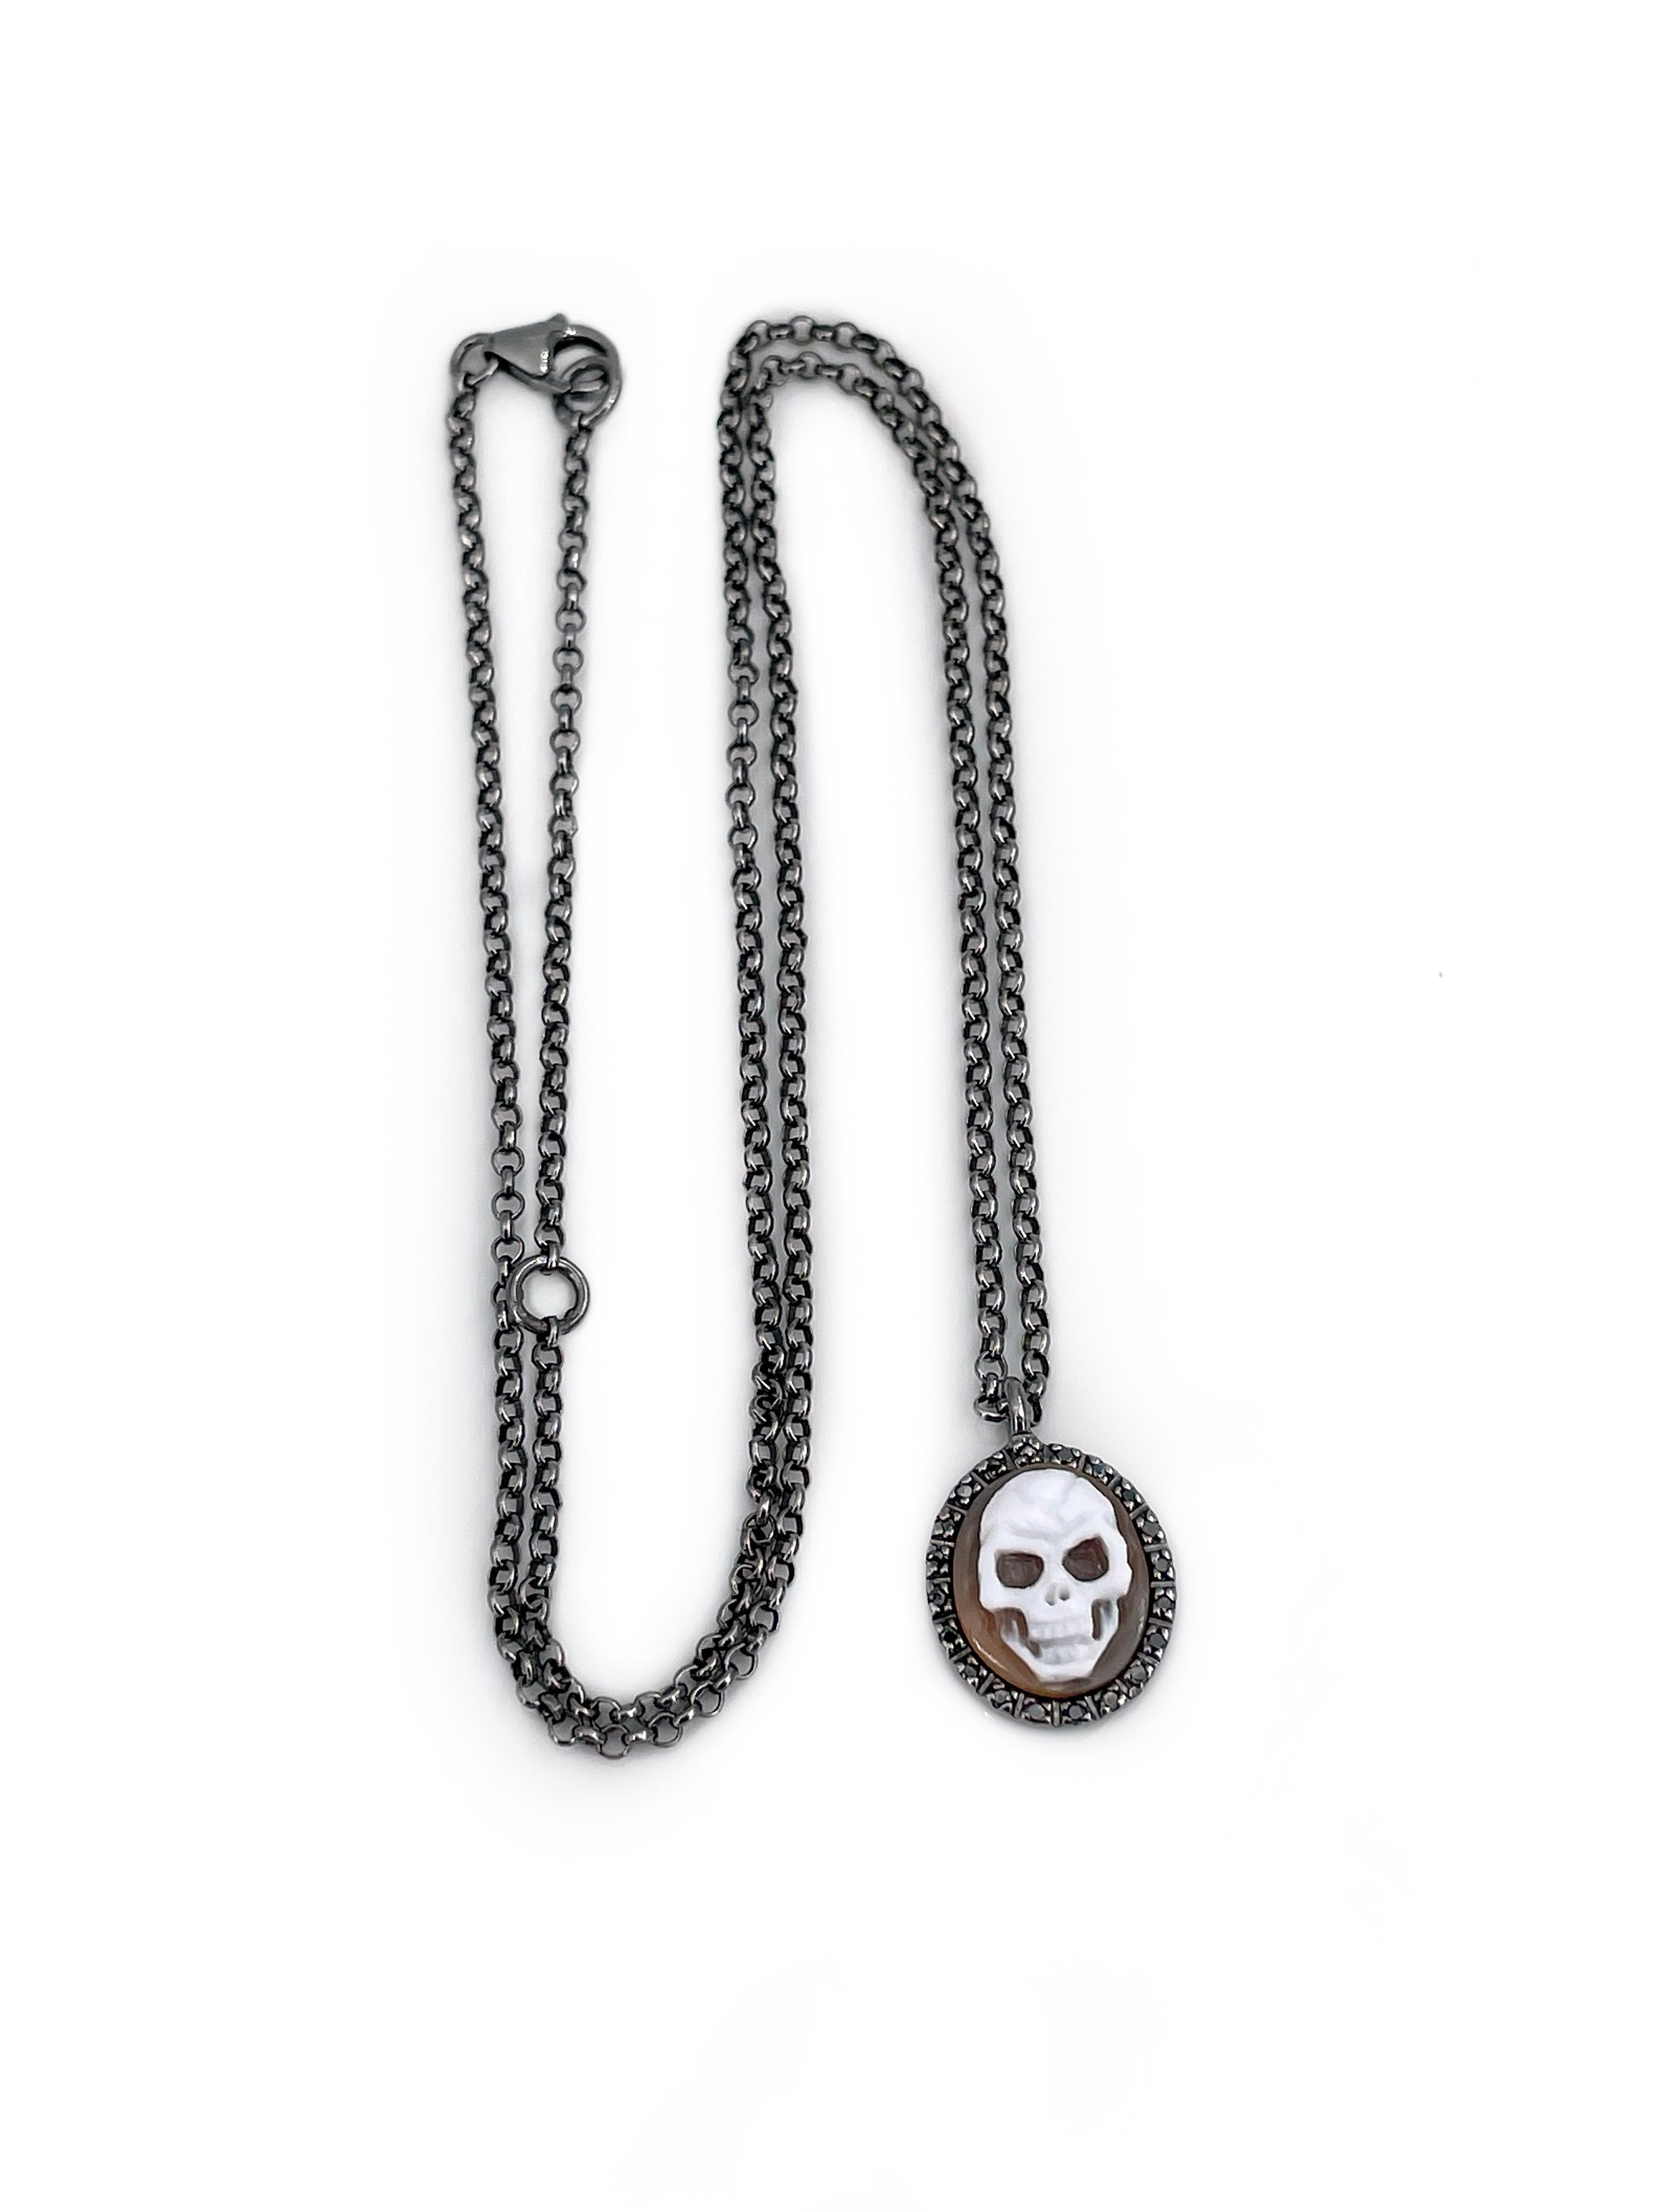 Il s'agit d'un collier pendentif au design exclusif conçu par la marque de bijoux italienne Amedeo dans les années 2010. Il est fabriqué en argent noirci poinçonné 925. La pièce comporte un mini camée en coquillage représentant le crâne. Il est